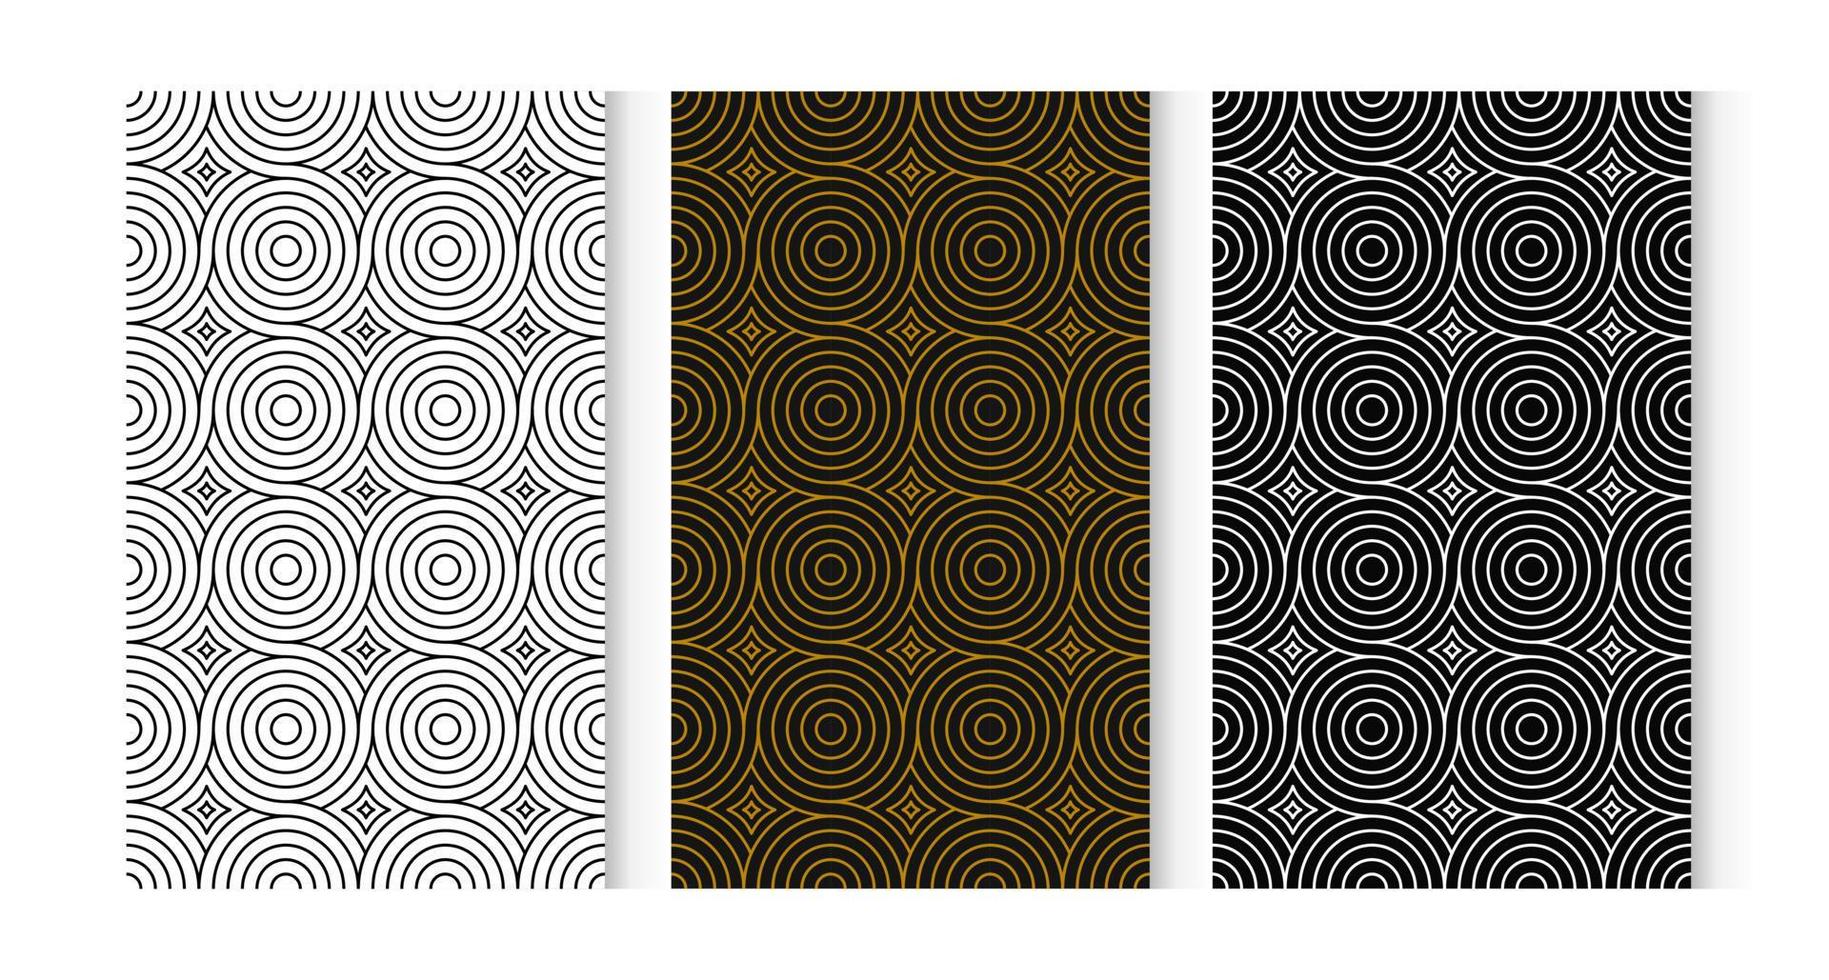 naadloos patroon cirkel 3 stijlen. wit, bruin, zwart. vector